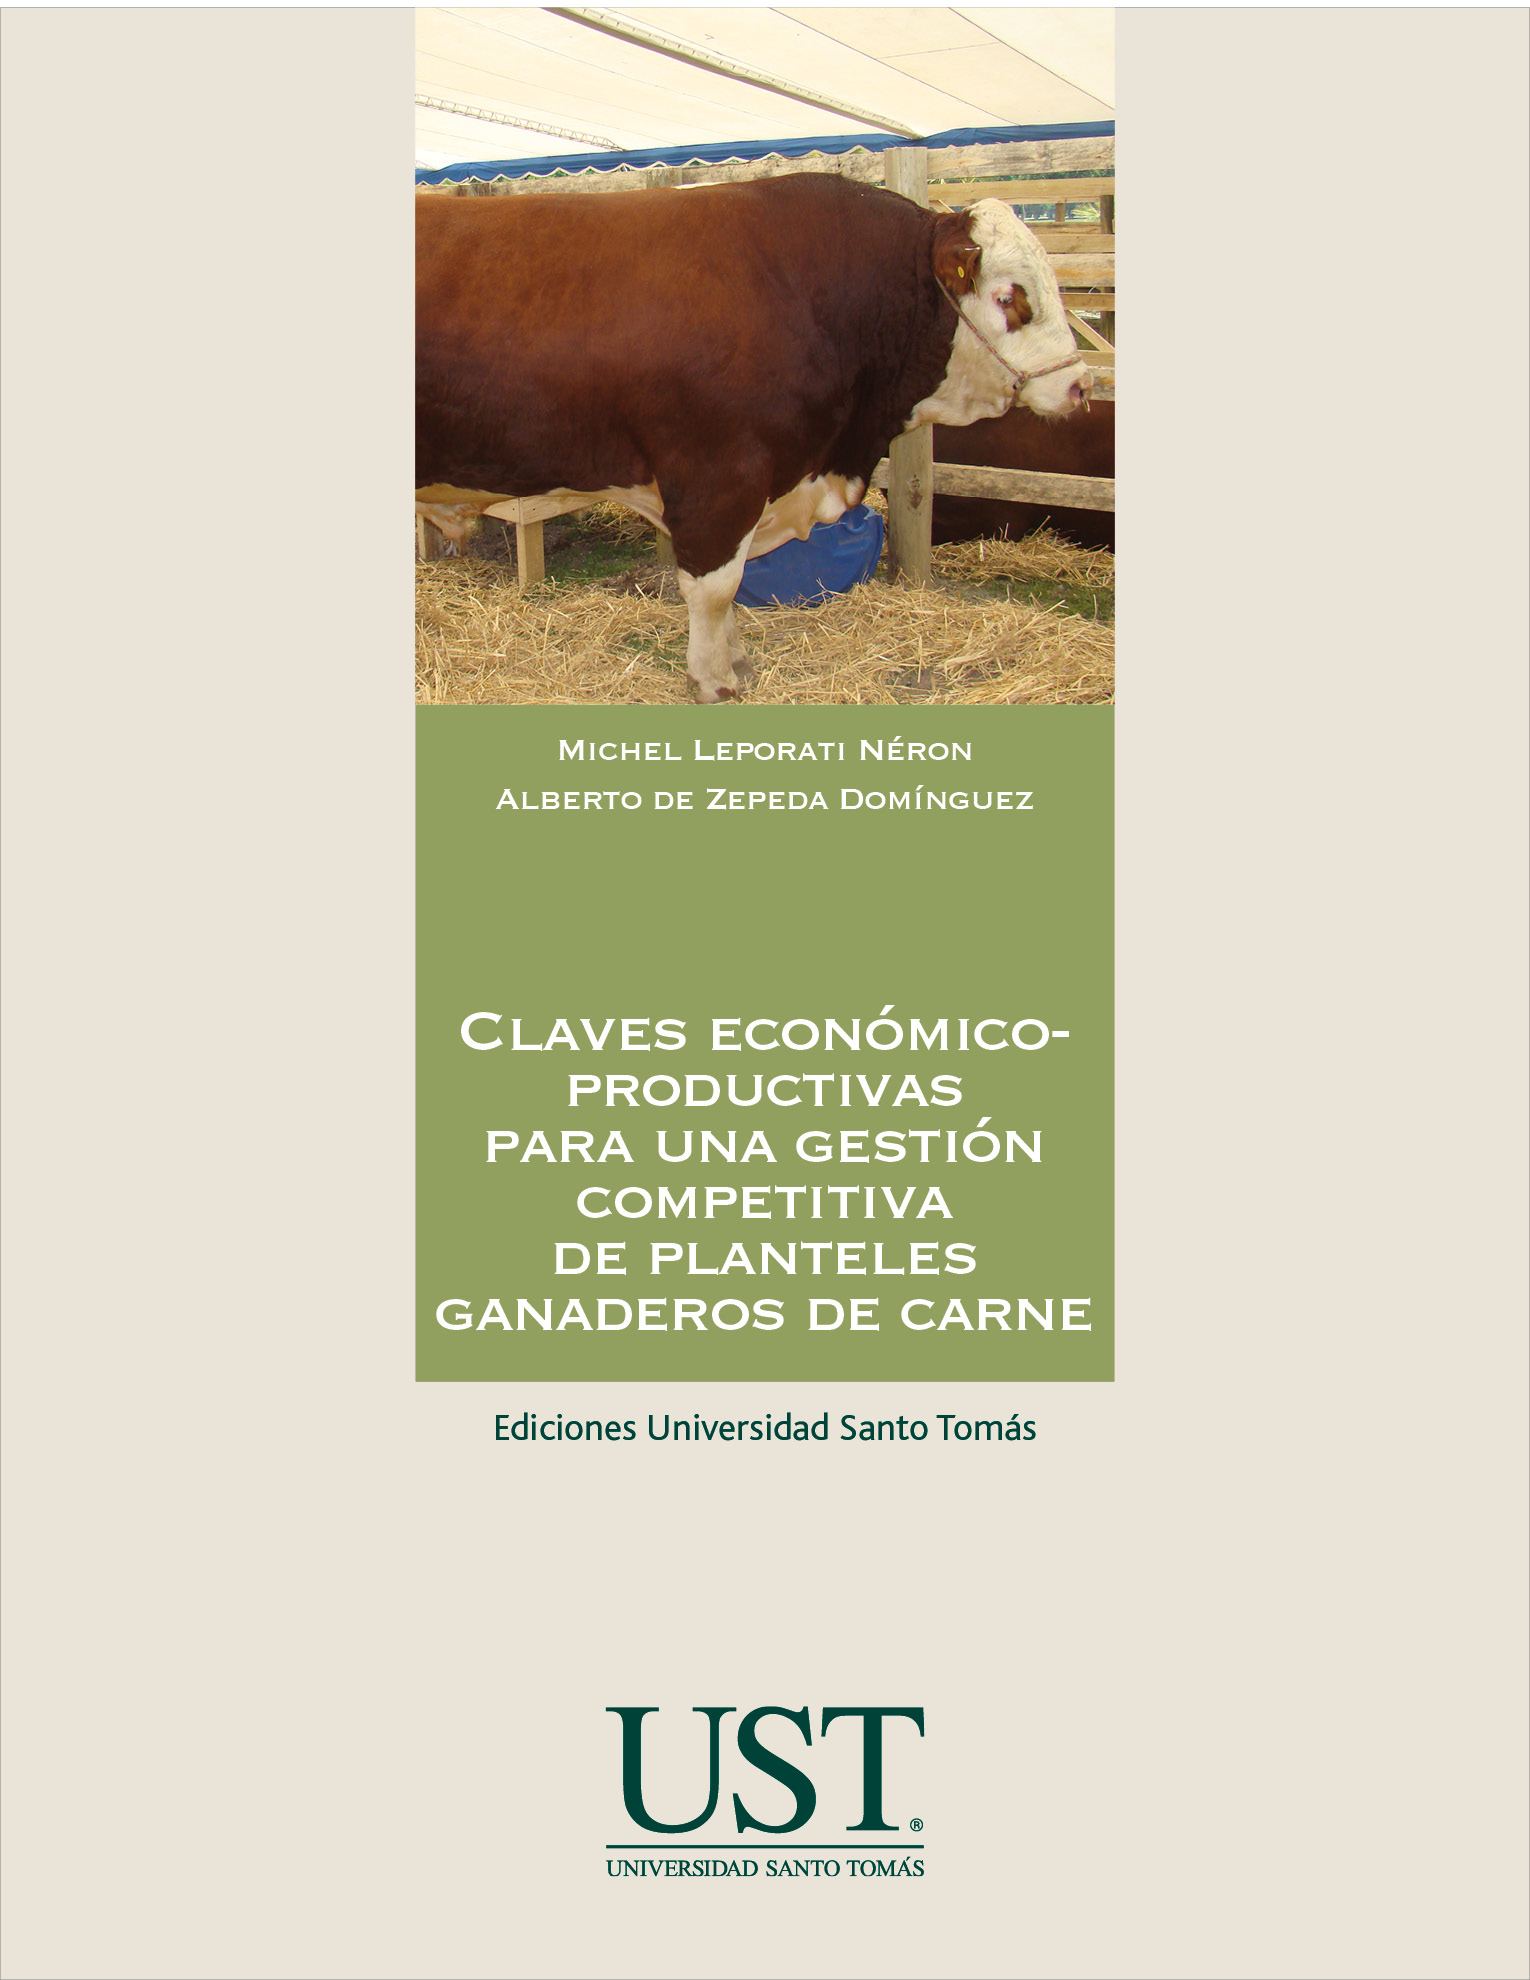 Claves económico-productivas para una gestión competitiva de planteles ganaderos de carne